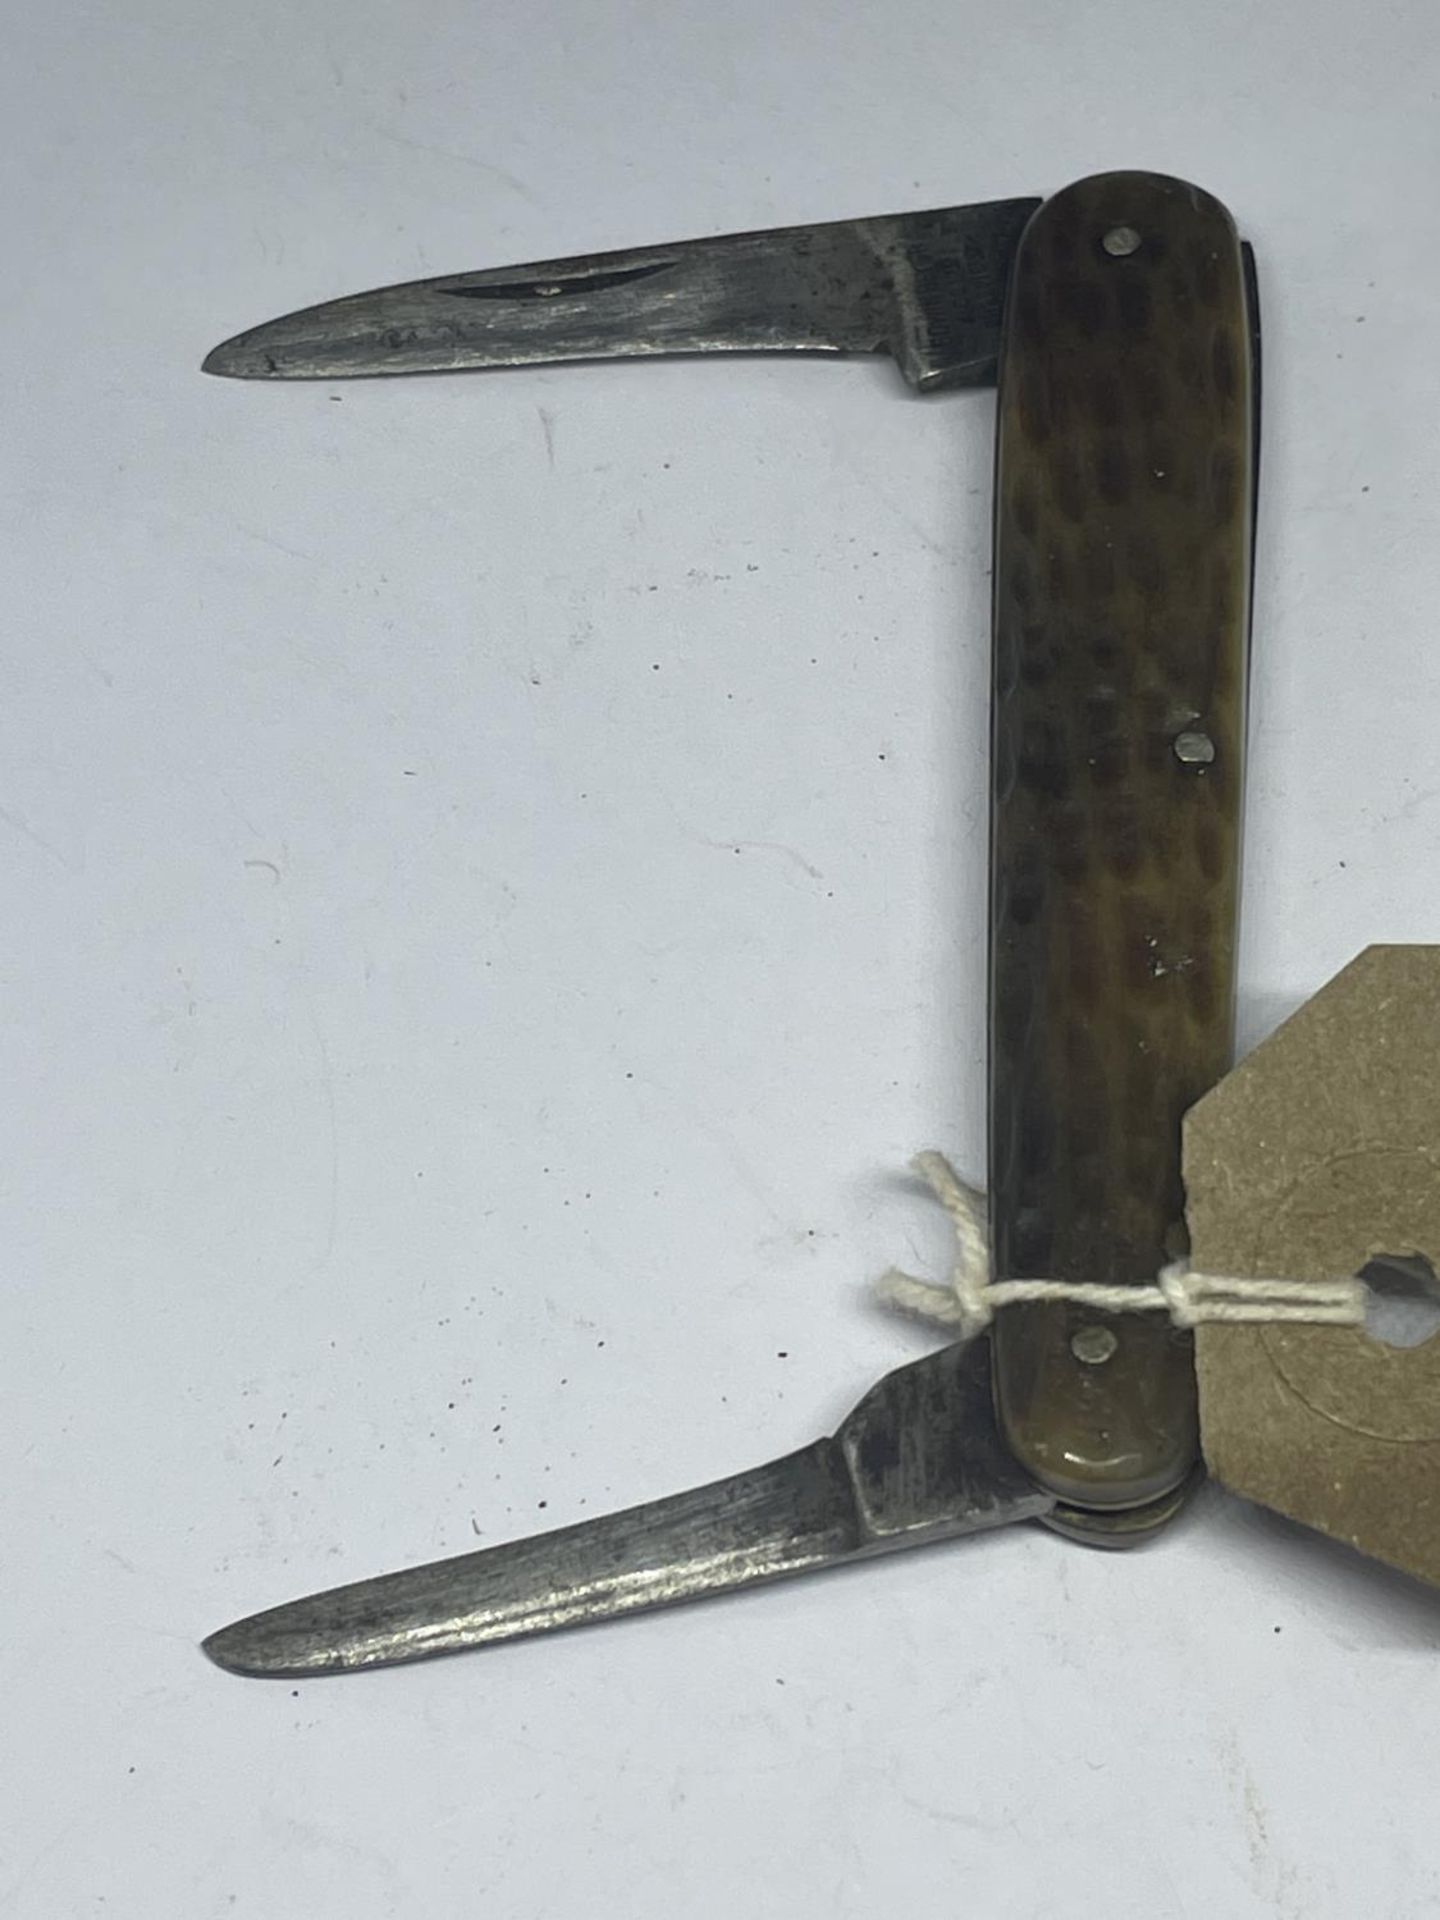 AN EDWIN BLYDE & CO LTD SHEFFIELD POCKET KNIFE